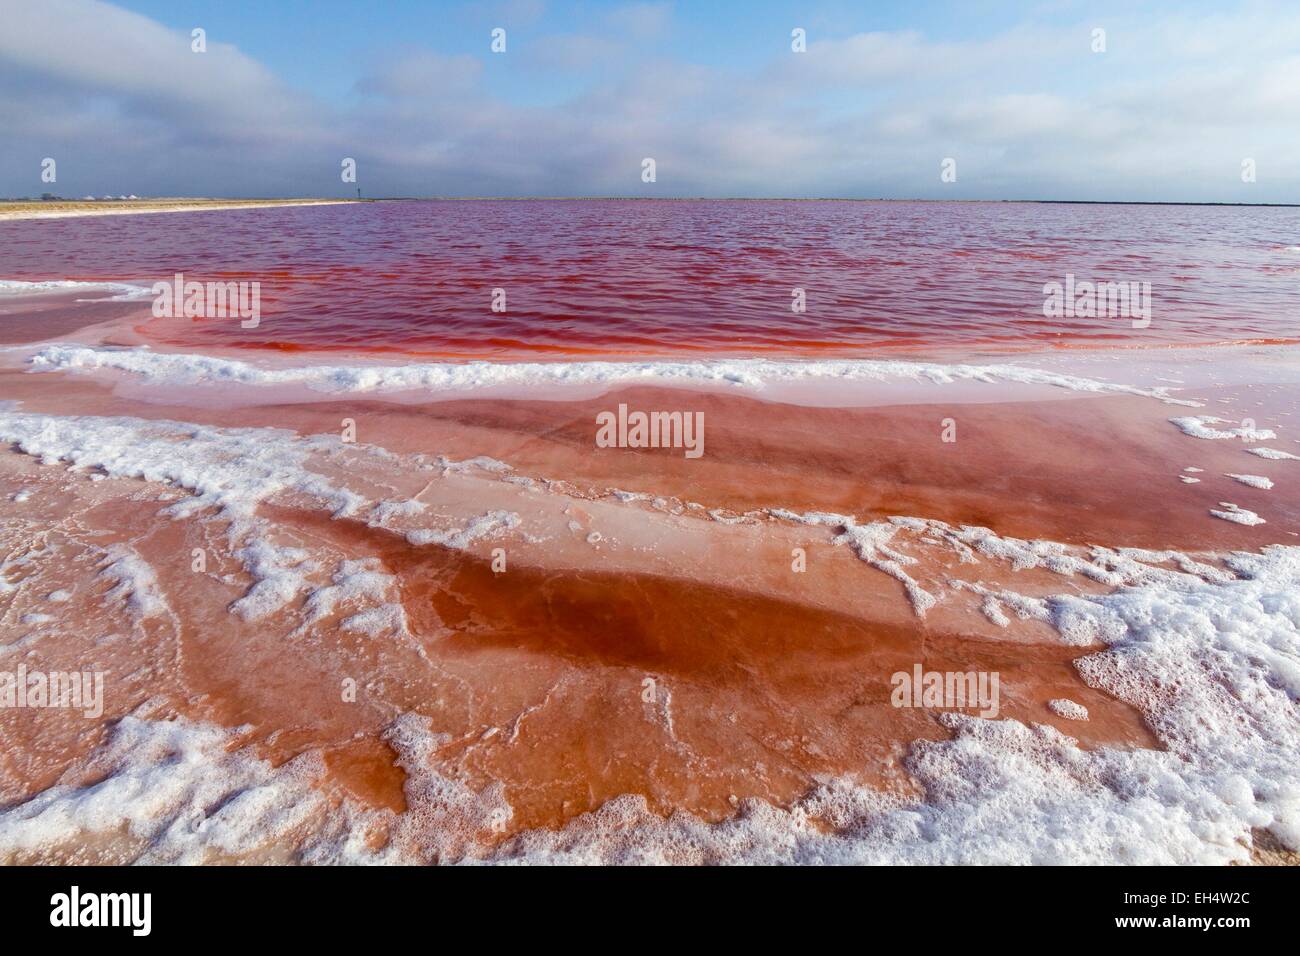 Namibia, Erongo region, Walvis bay, salt marshes Stock Photo